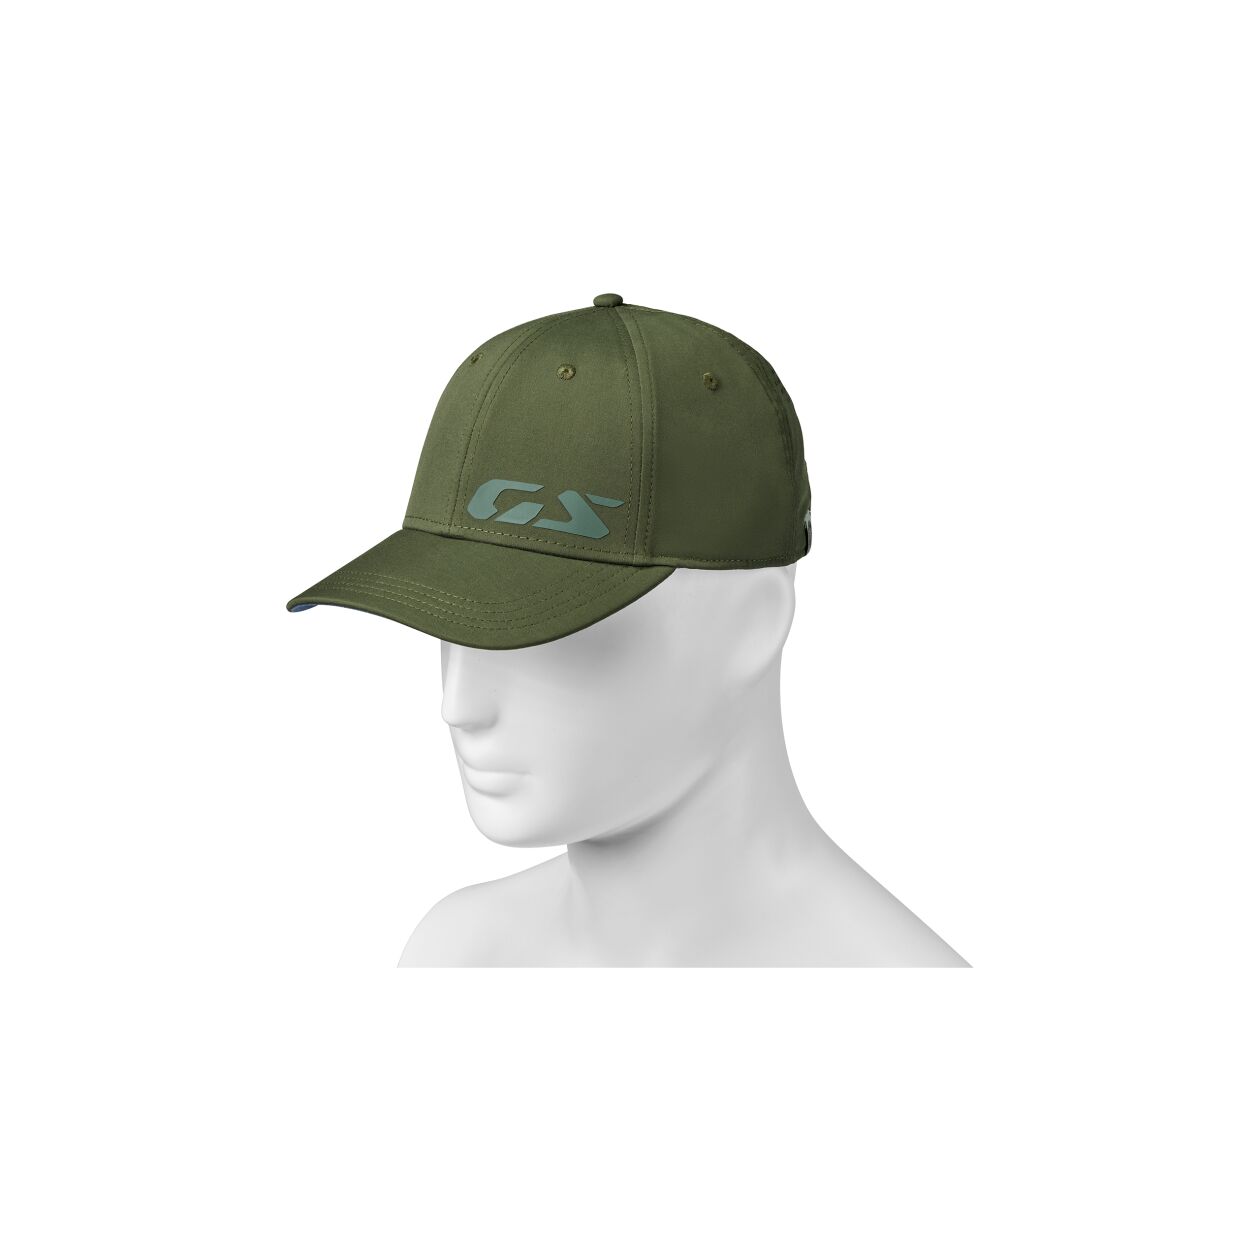 GS OLIVE CAP